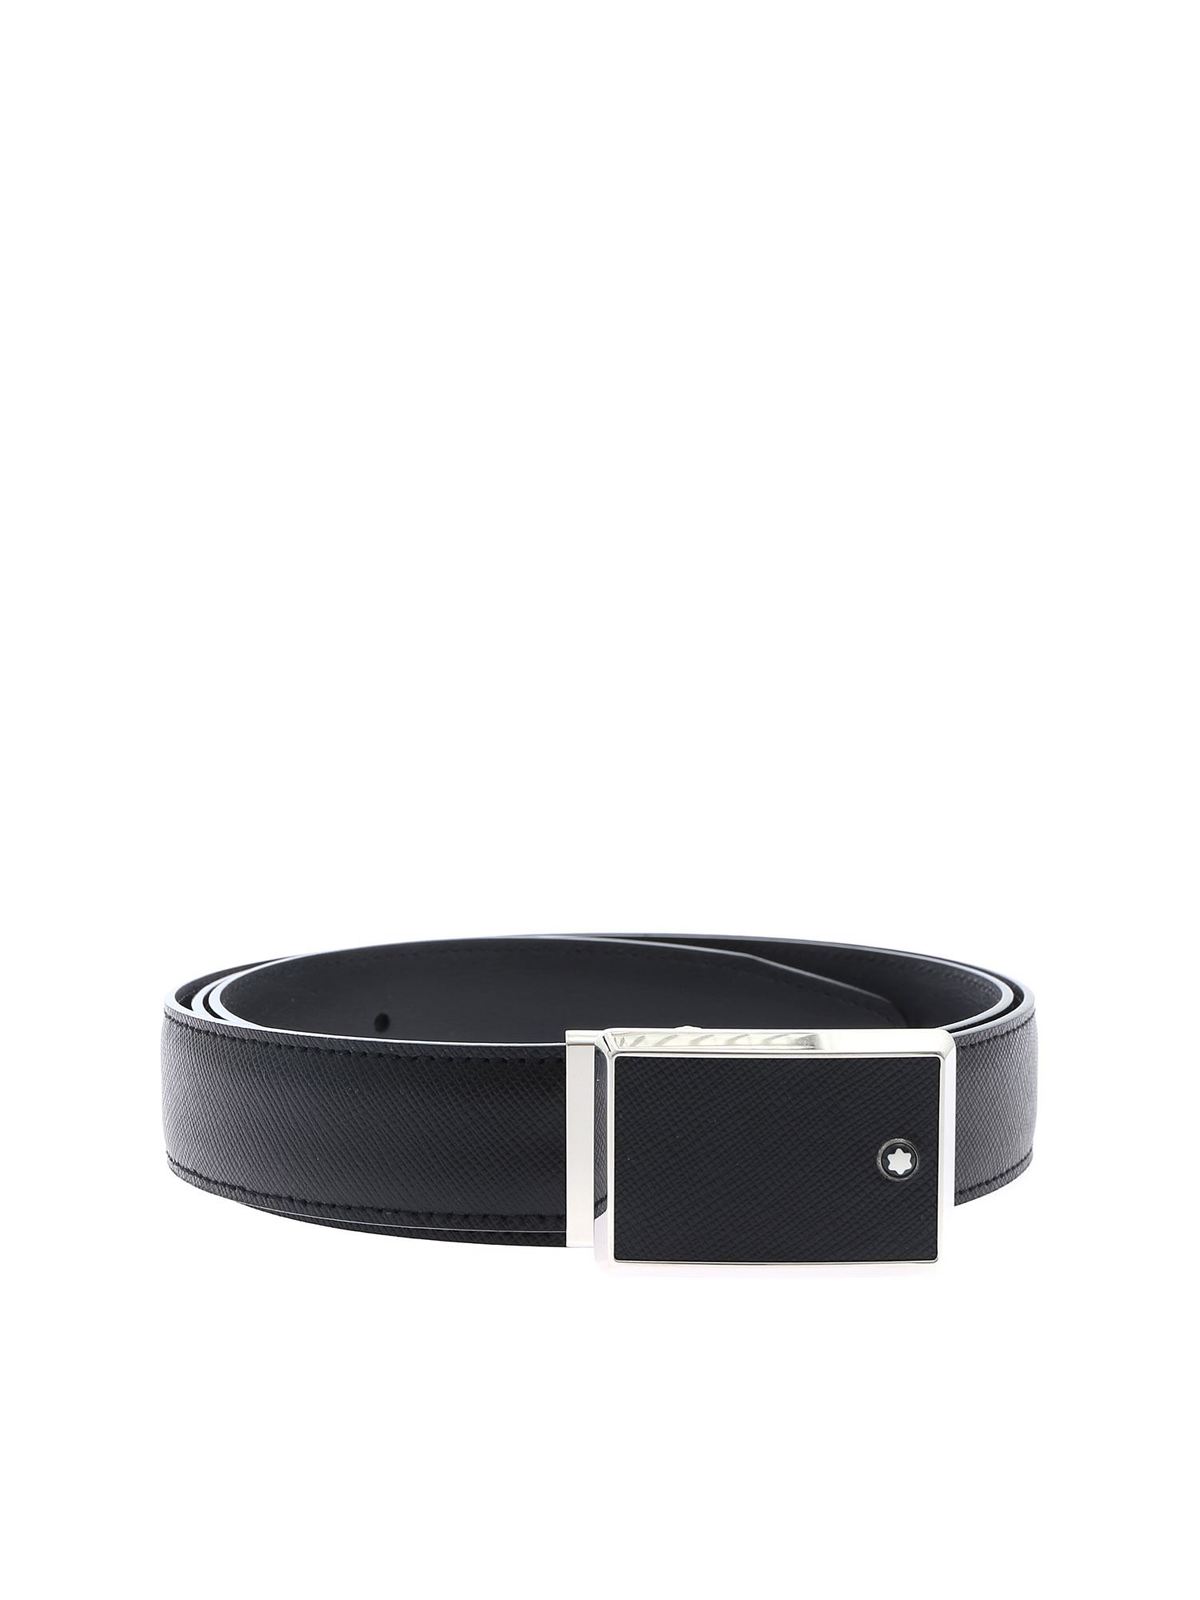 Belts Montblanc - Contemporary Line belt - 114421 | Shop online at iKRIX